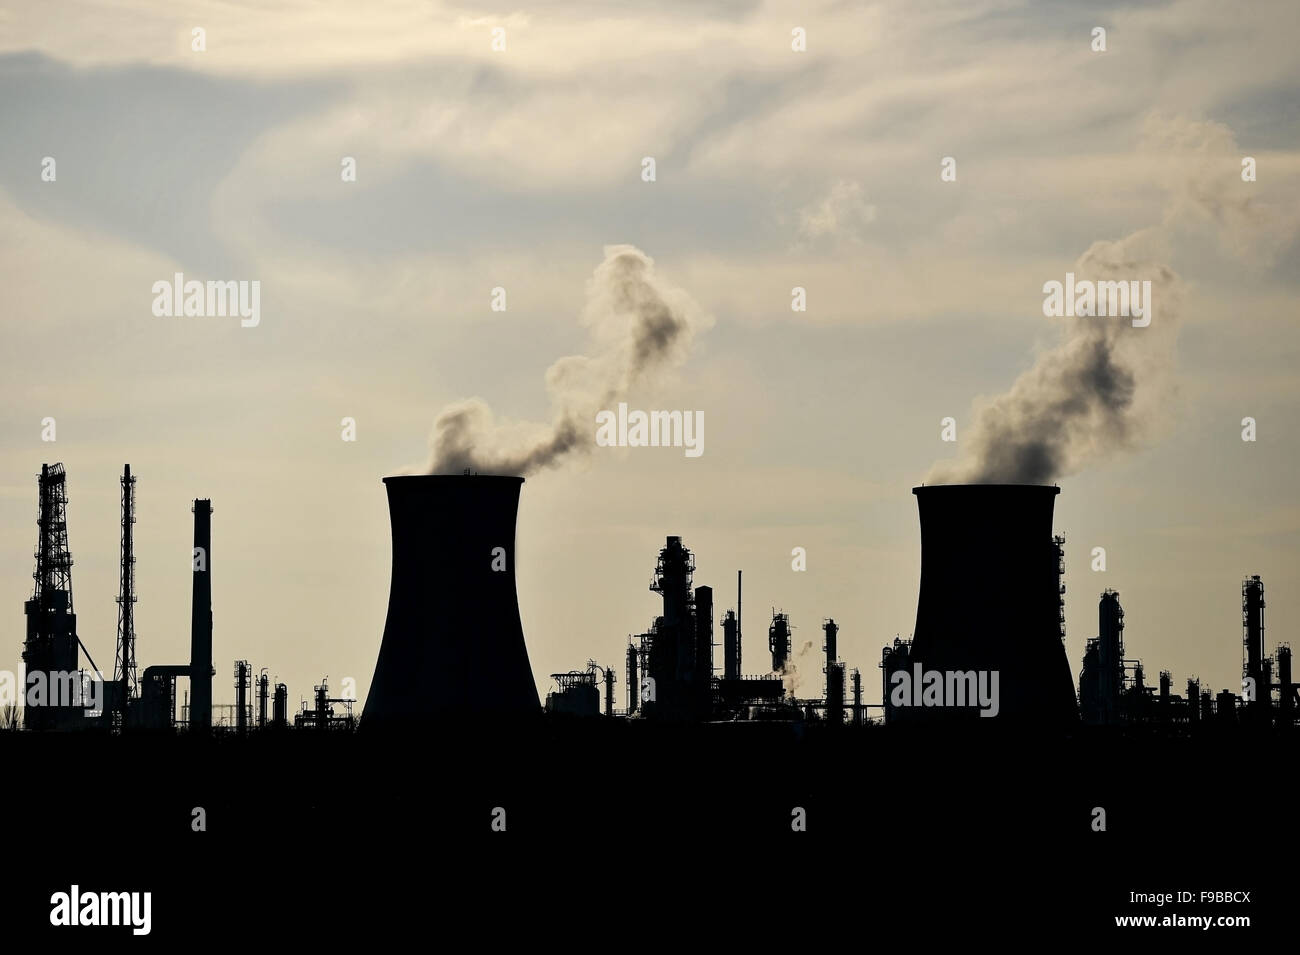 Rauch und Dampf, die sich aus petrochemischen Industrieanlagen Schornsteine Silhouette gegen den Himmel Stockfoto